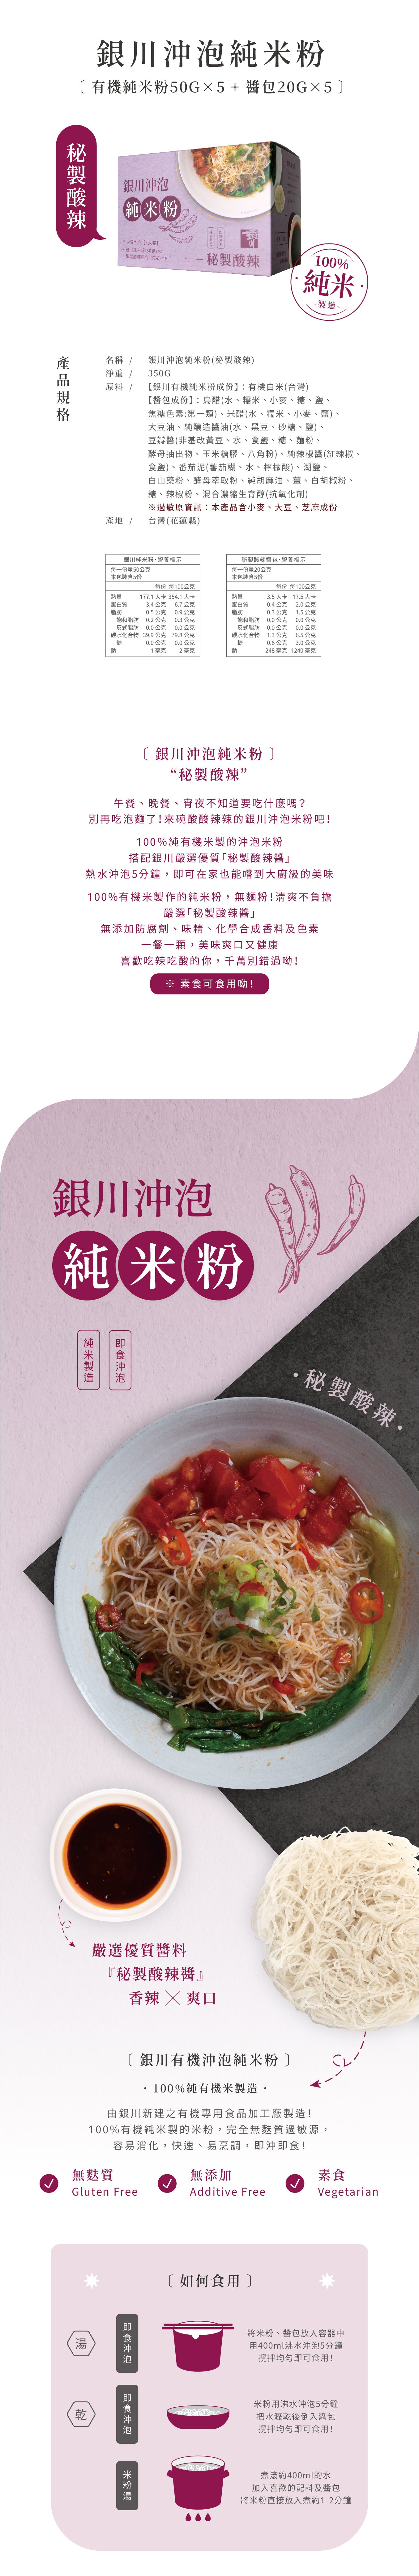 #5892 銀川沖泡純米粉-秘製酸辣 Instant Rice Noodles-Secret sour and spicy (銀川) 350g, 20/cs